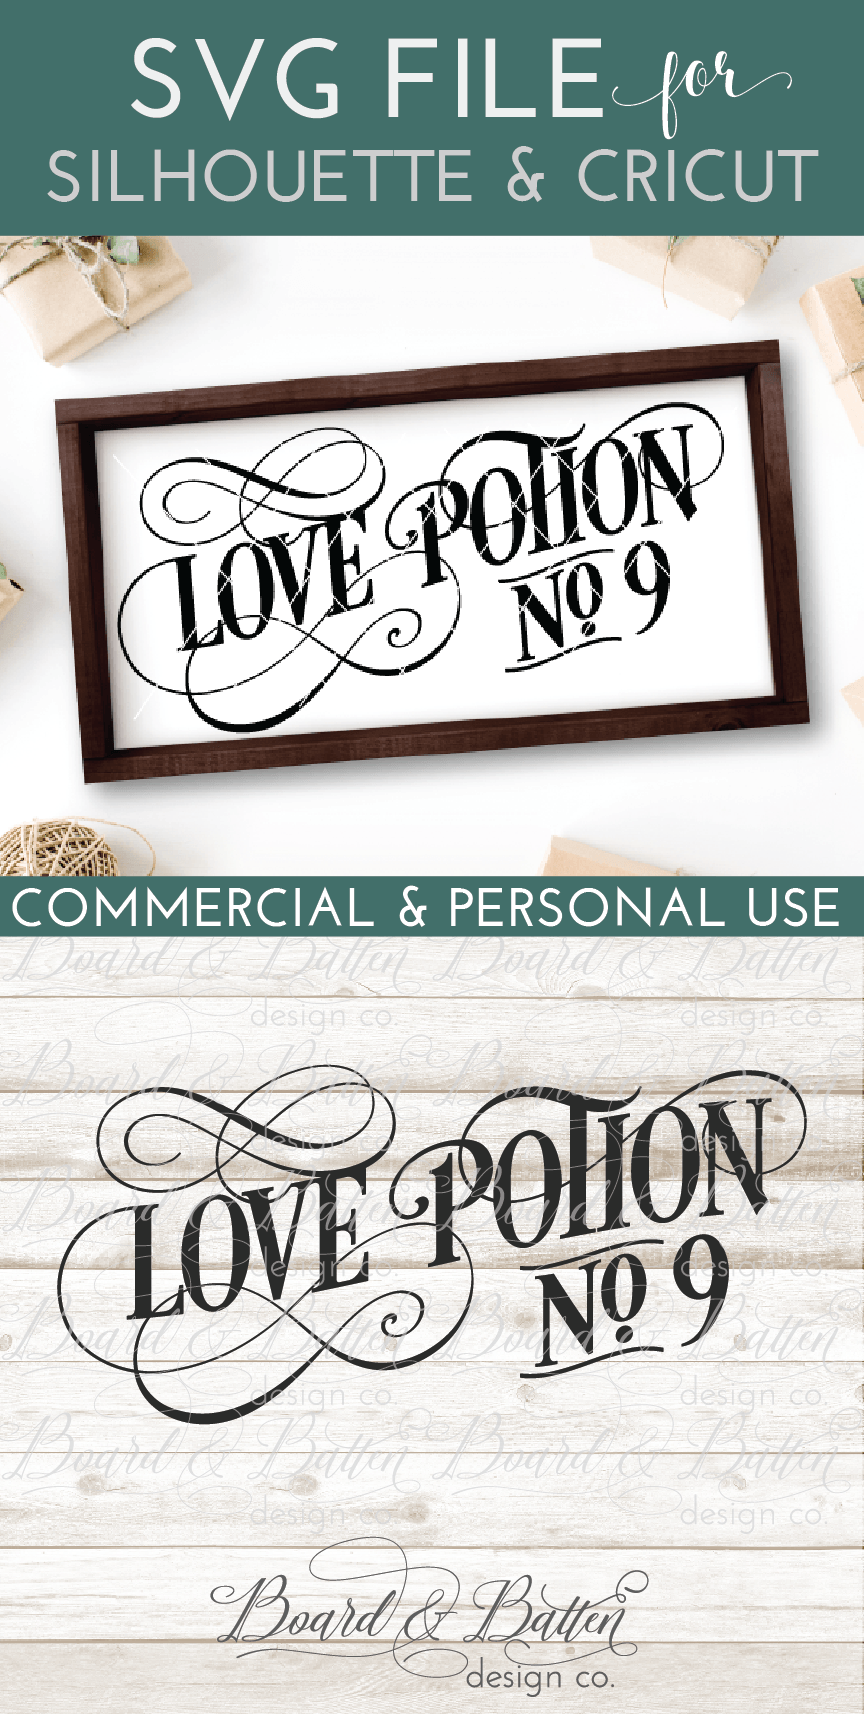 Download Love Potion No 9 Vintage SVG - Board & Batten Design Co.